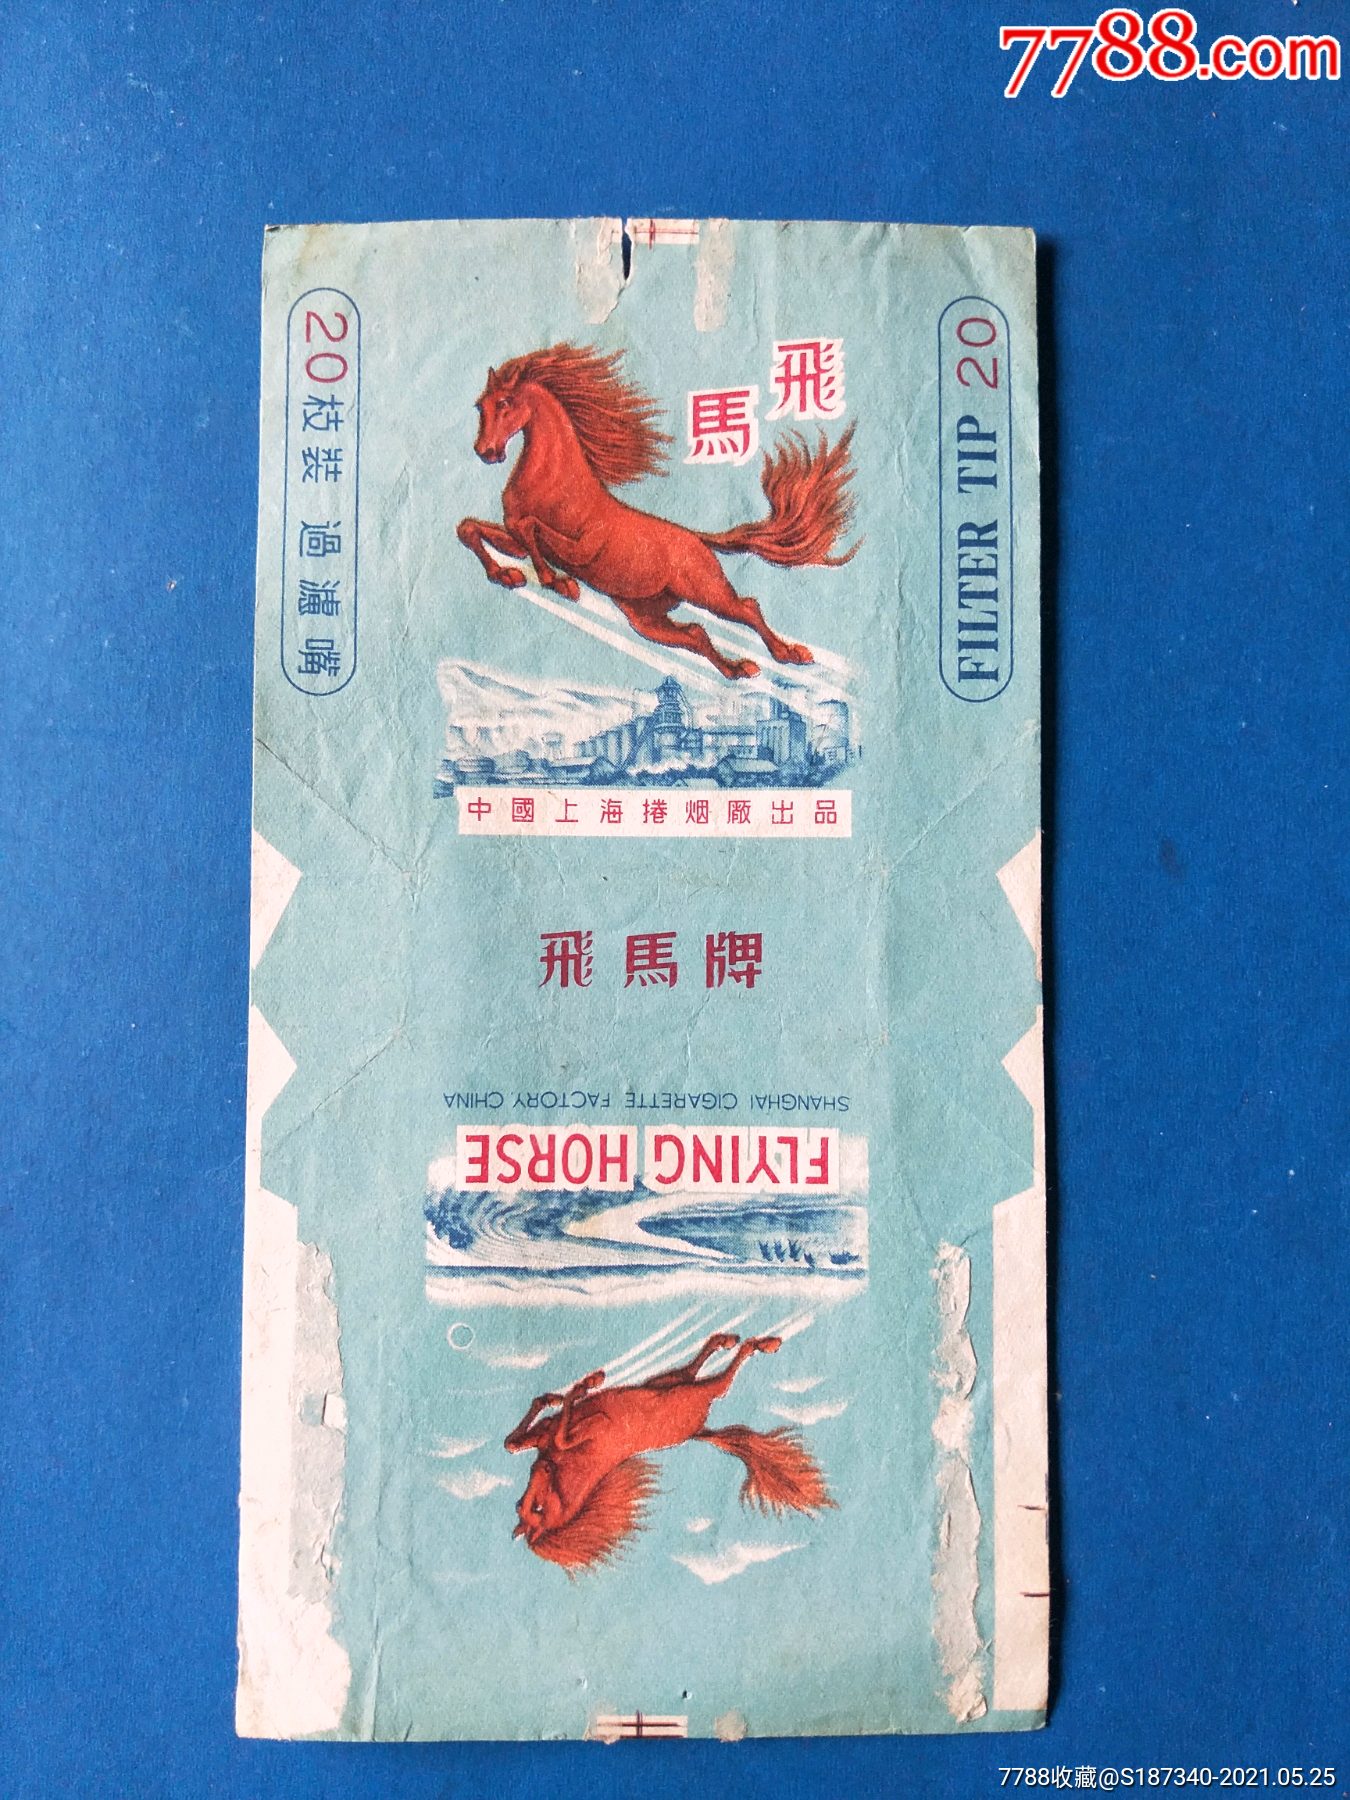 烟标飞马中国上海卷烟厂